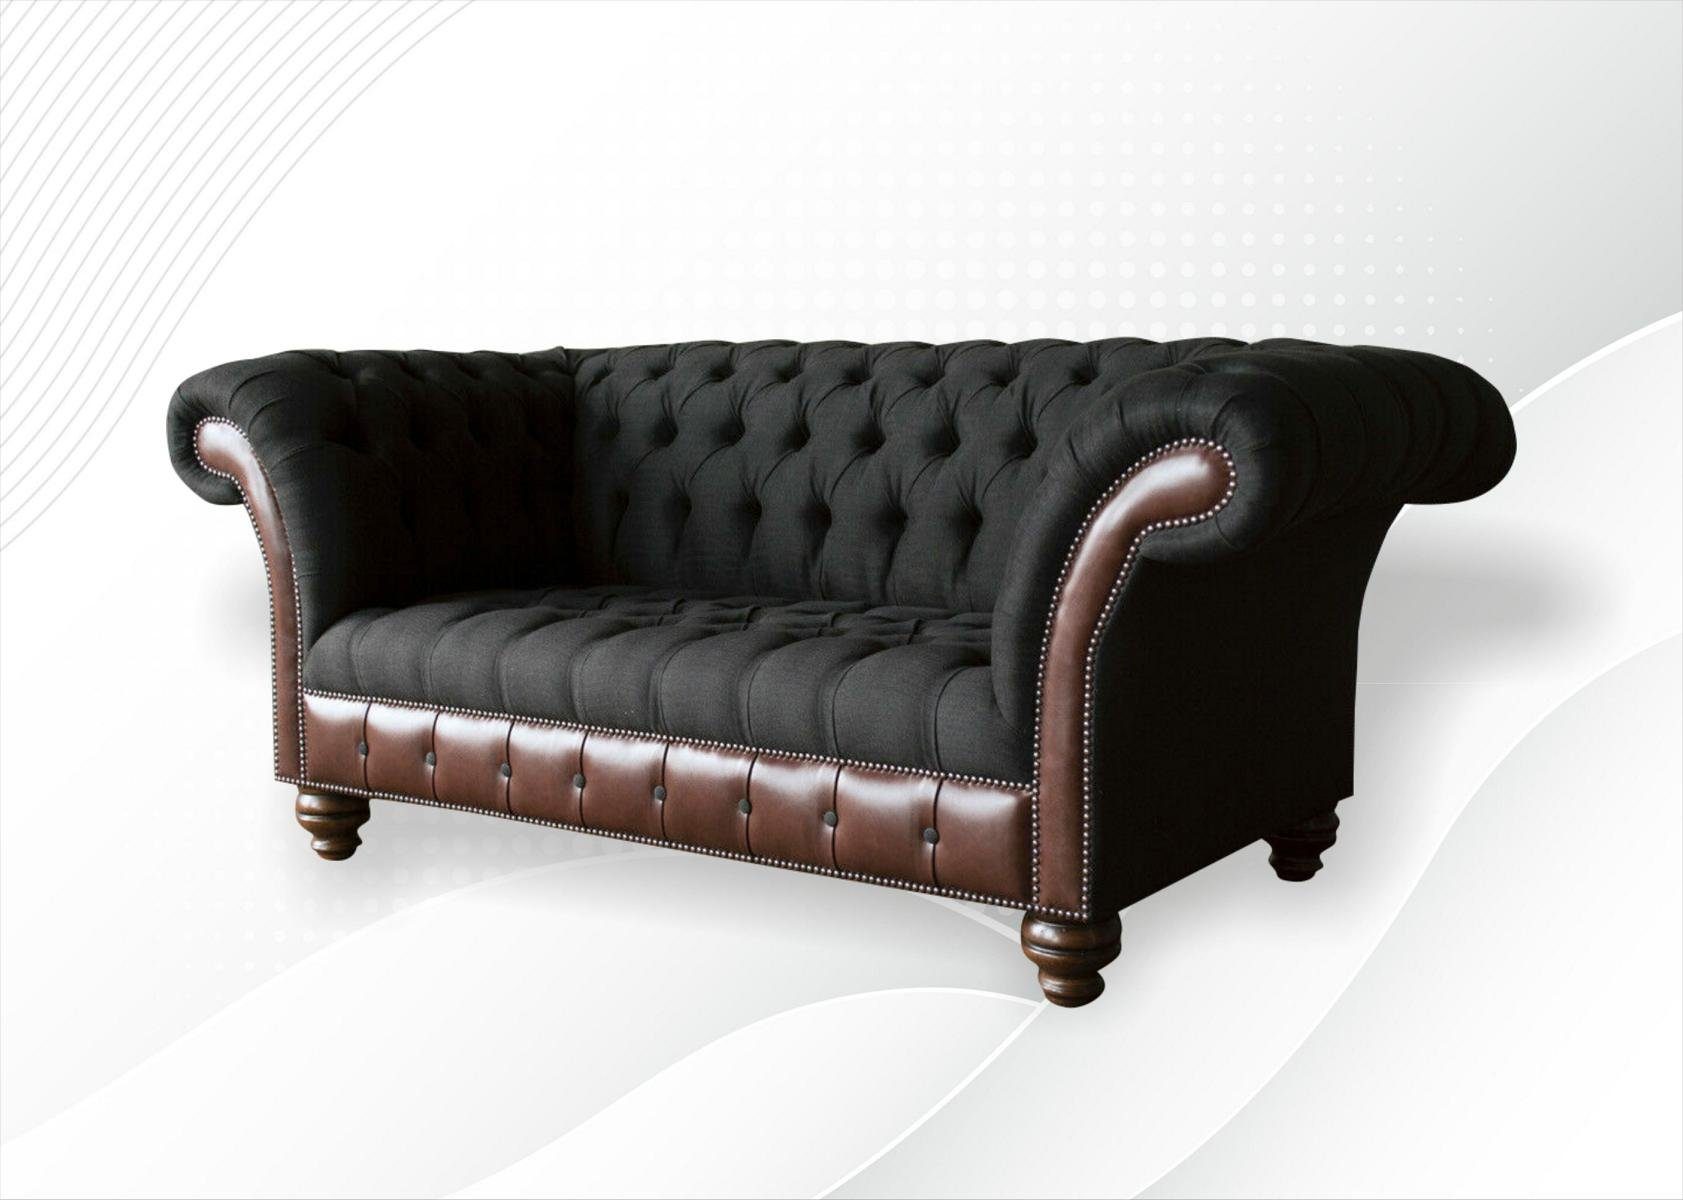 JVmoebel Sofa Chesterfield in Made Modern Design, Couch Europe schwarz-braune Wohnzimmer